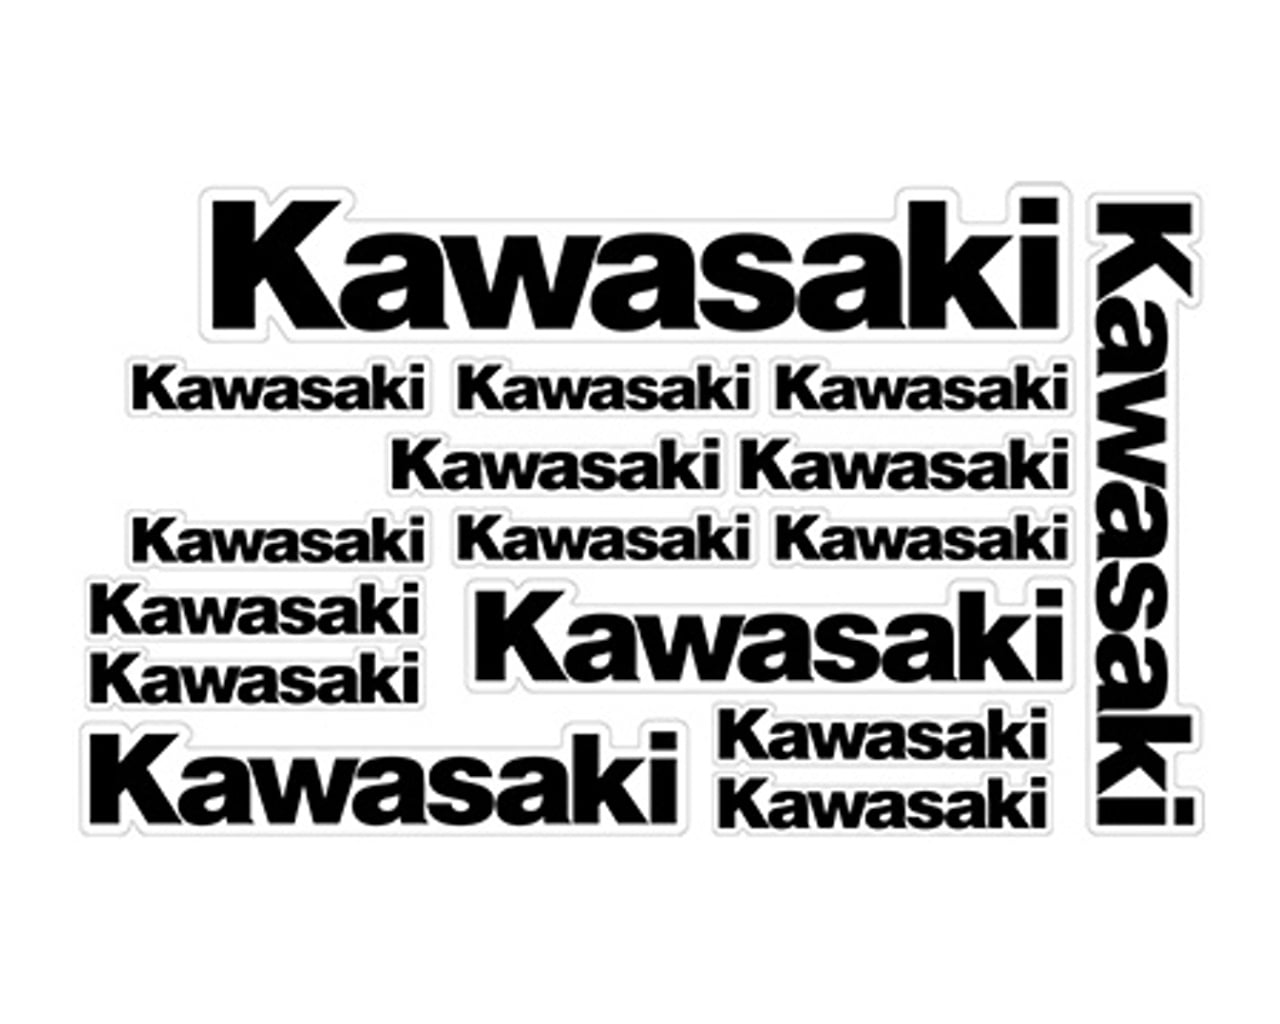 Kawasaki Products Online Shopping Store | Buy Kawasaki Products at 